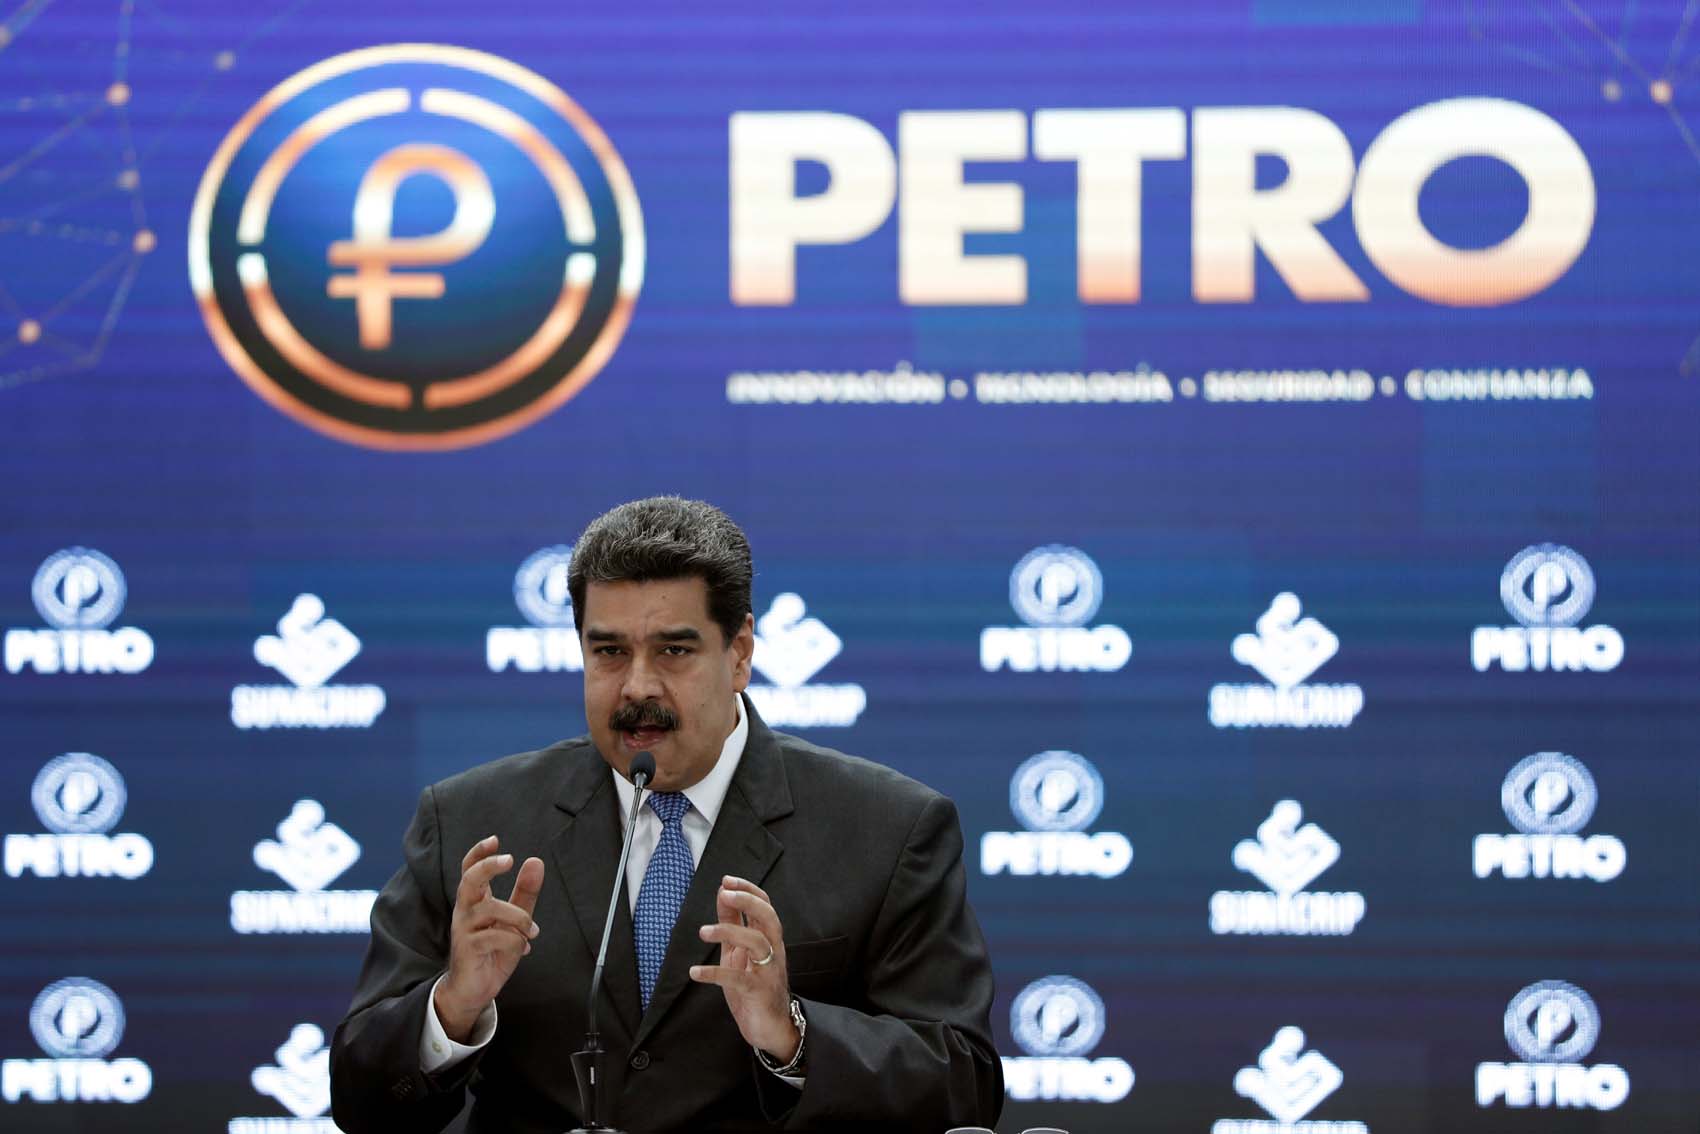 Maduro pretende que el petro sea un ecosistema autónomo fuera de la regulación del BCV